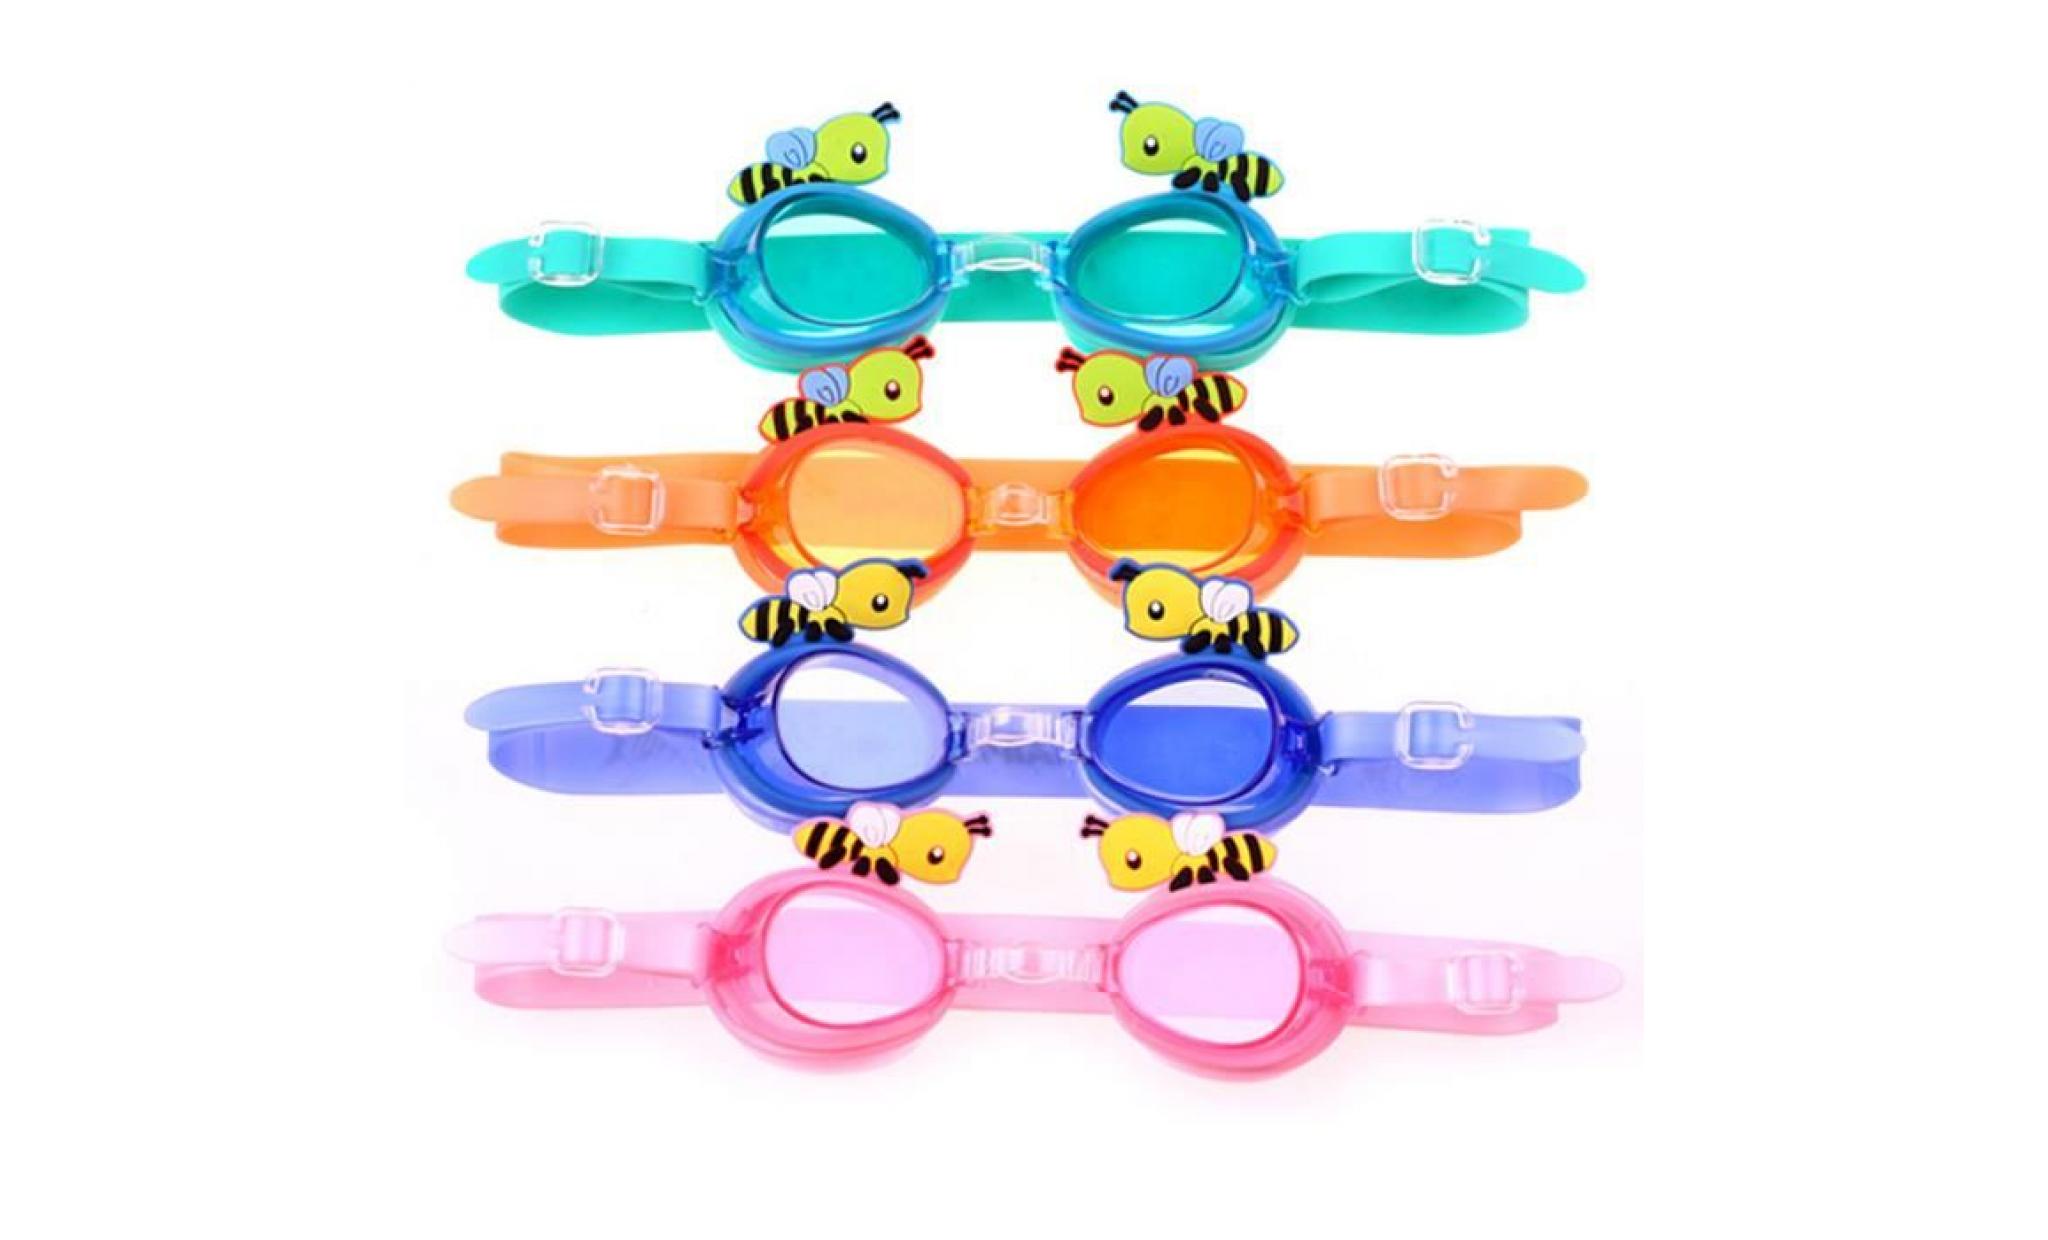 bleu clair cartoon abeilles enfants etanche anti fog protection uv swim piscine silicone lunettes lunettes pas cher